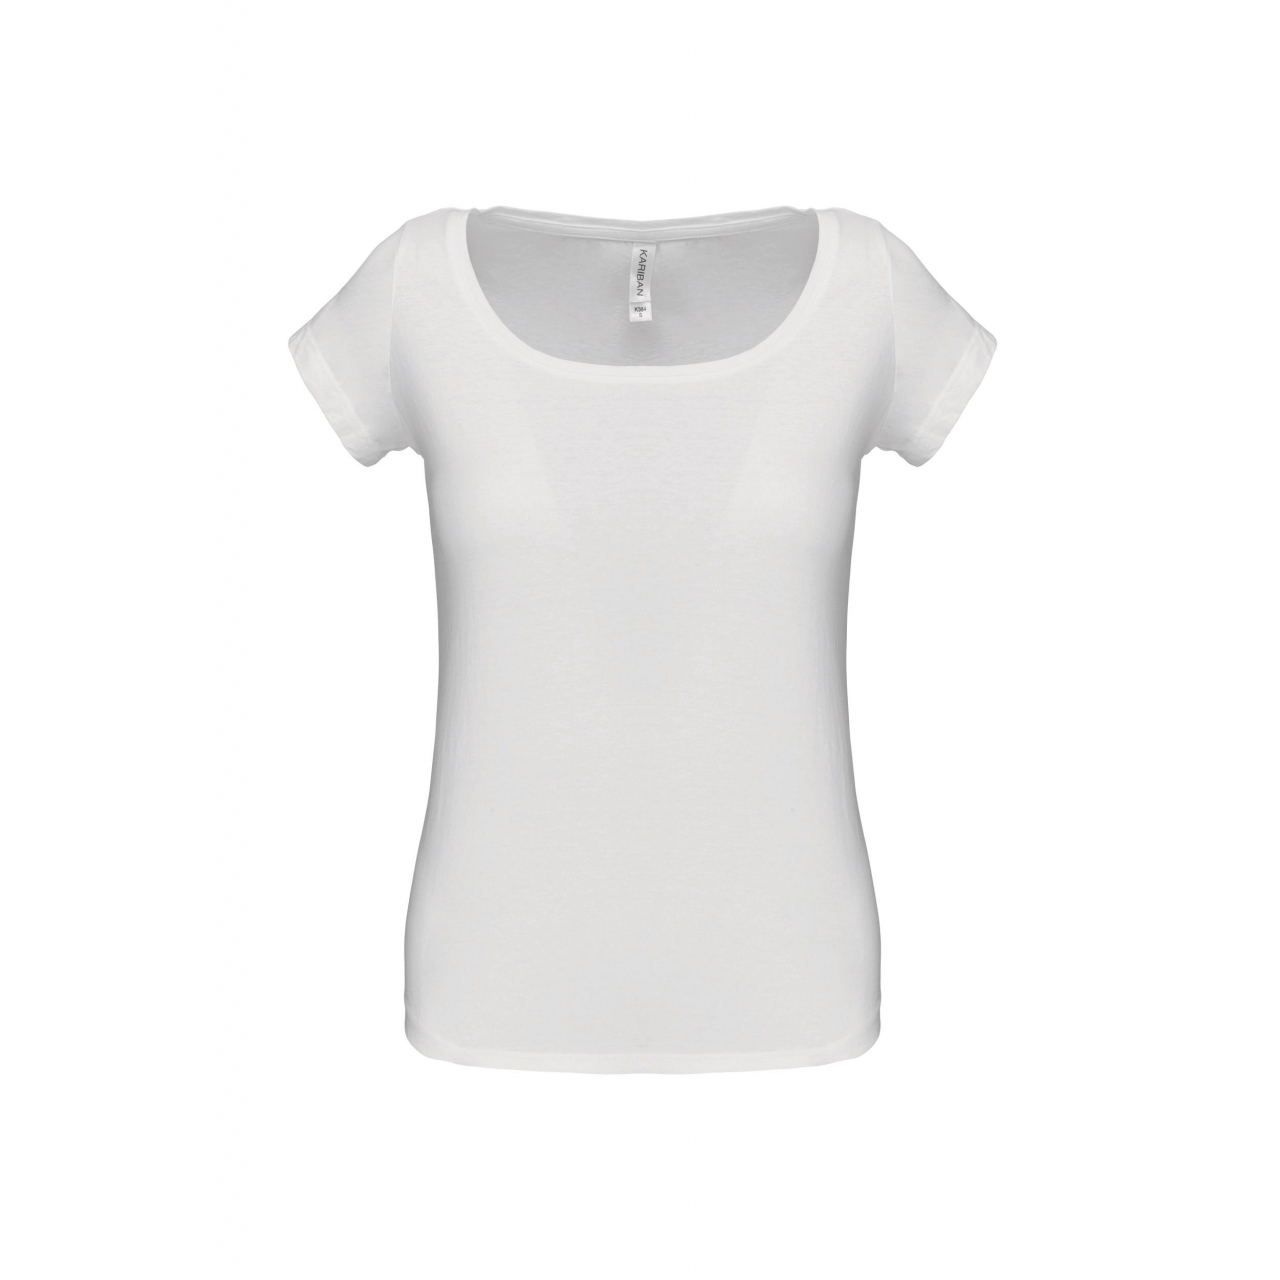 Dámské tričko Kariban s lodičkovým výstřihem - bílé, M